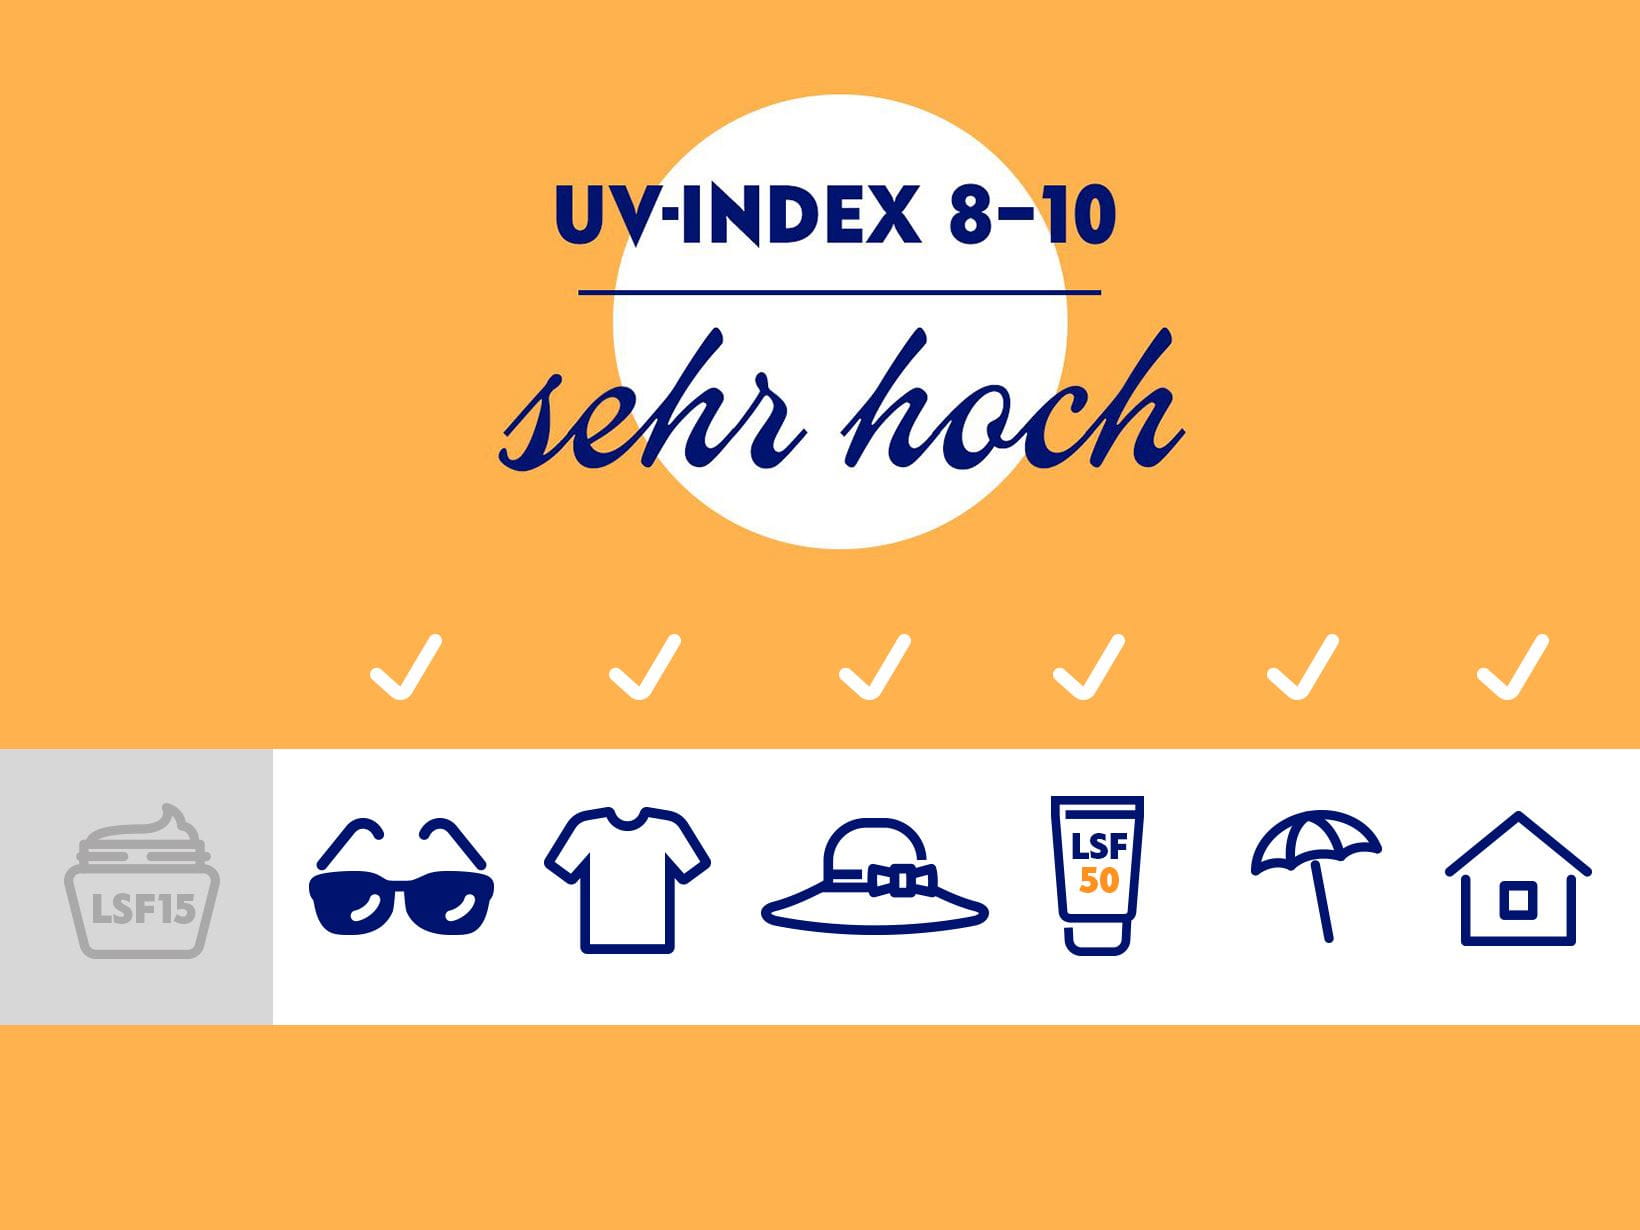  Bei einem sehr hohen UV-Index von 8-10 sollte man Sonnenschutz mit mindestens LSF 50 sowie Sonnenbrille, Kleidung und Hut tragen, Schatten aufsuchen und sich in der Mittagszeit wenn möglich nicht im Freien aufhalten.